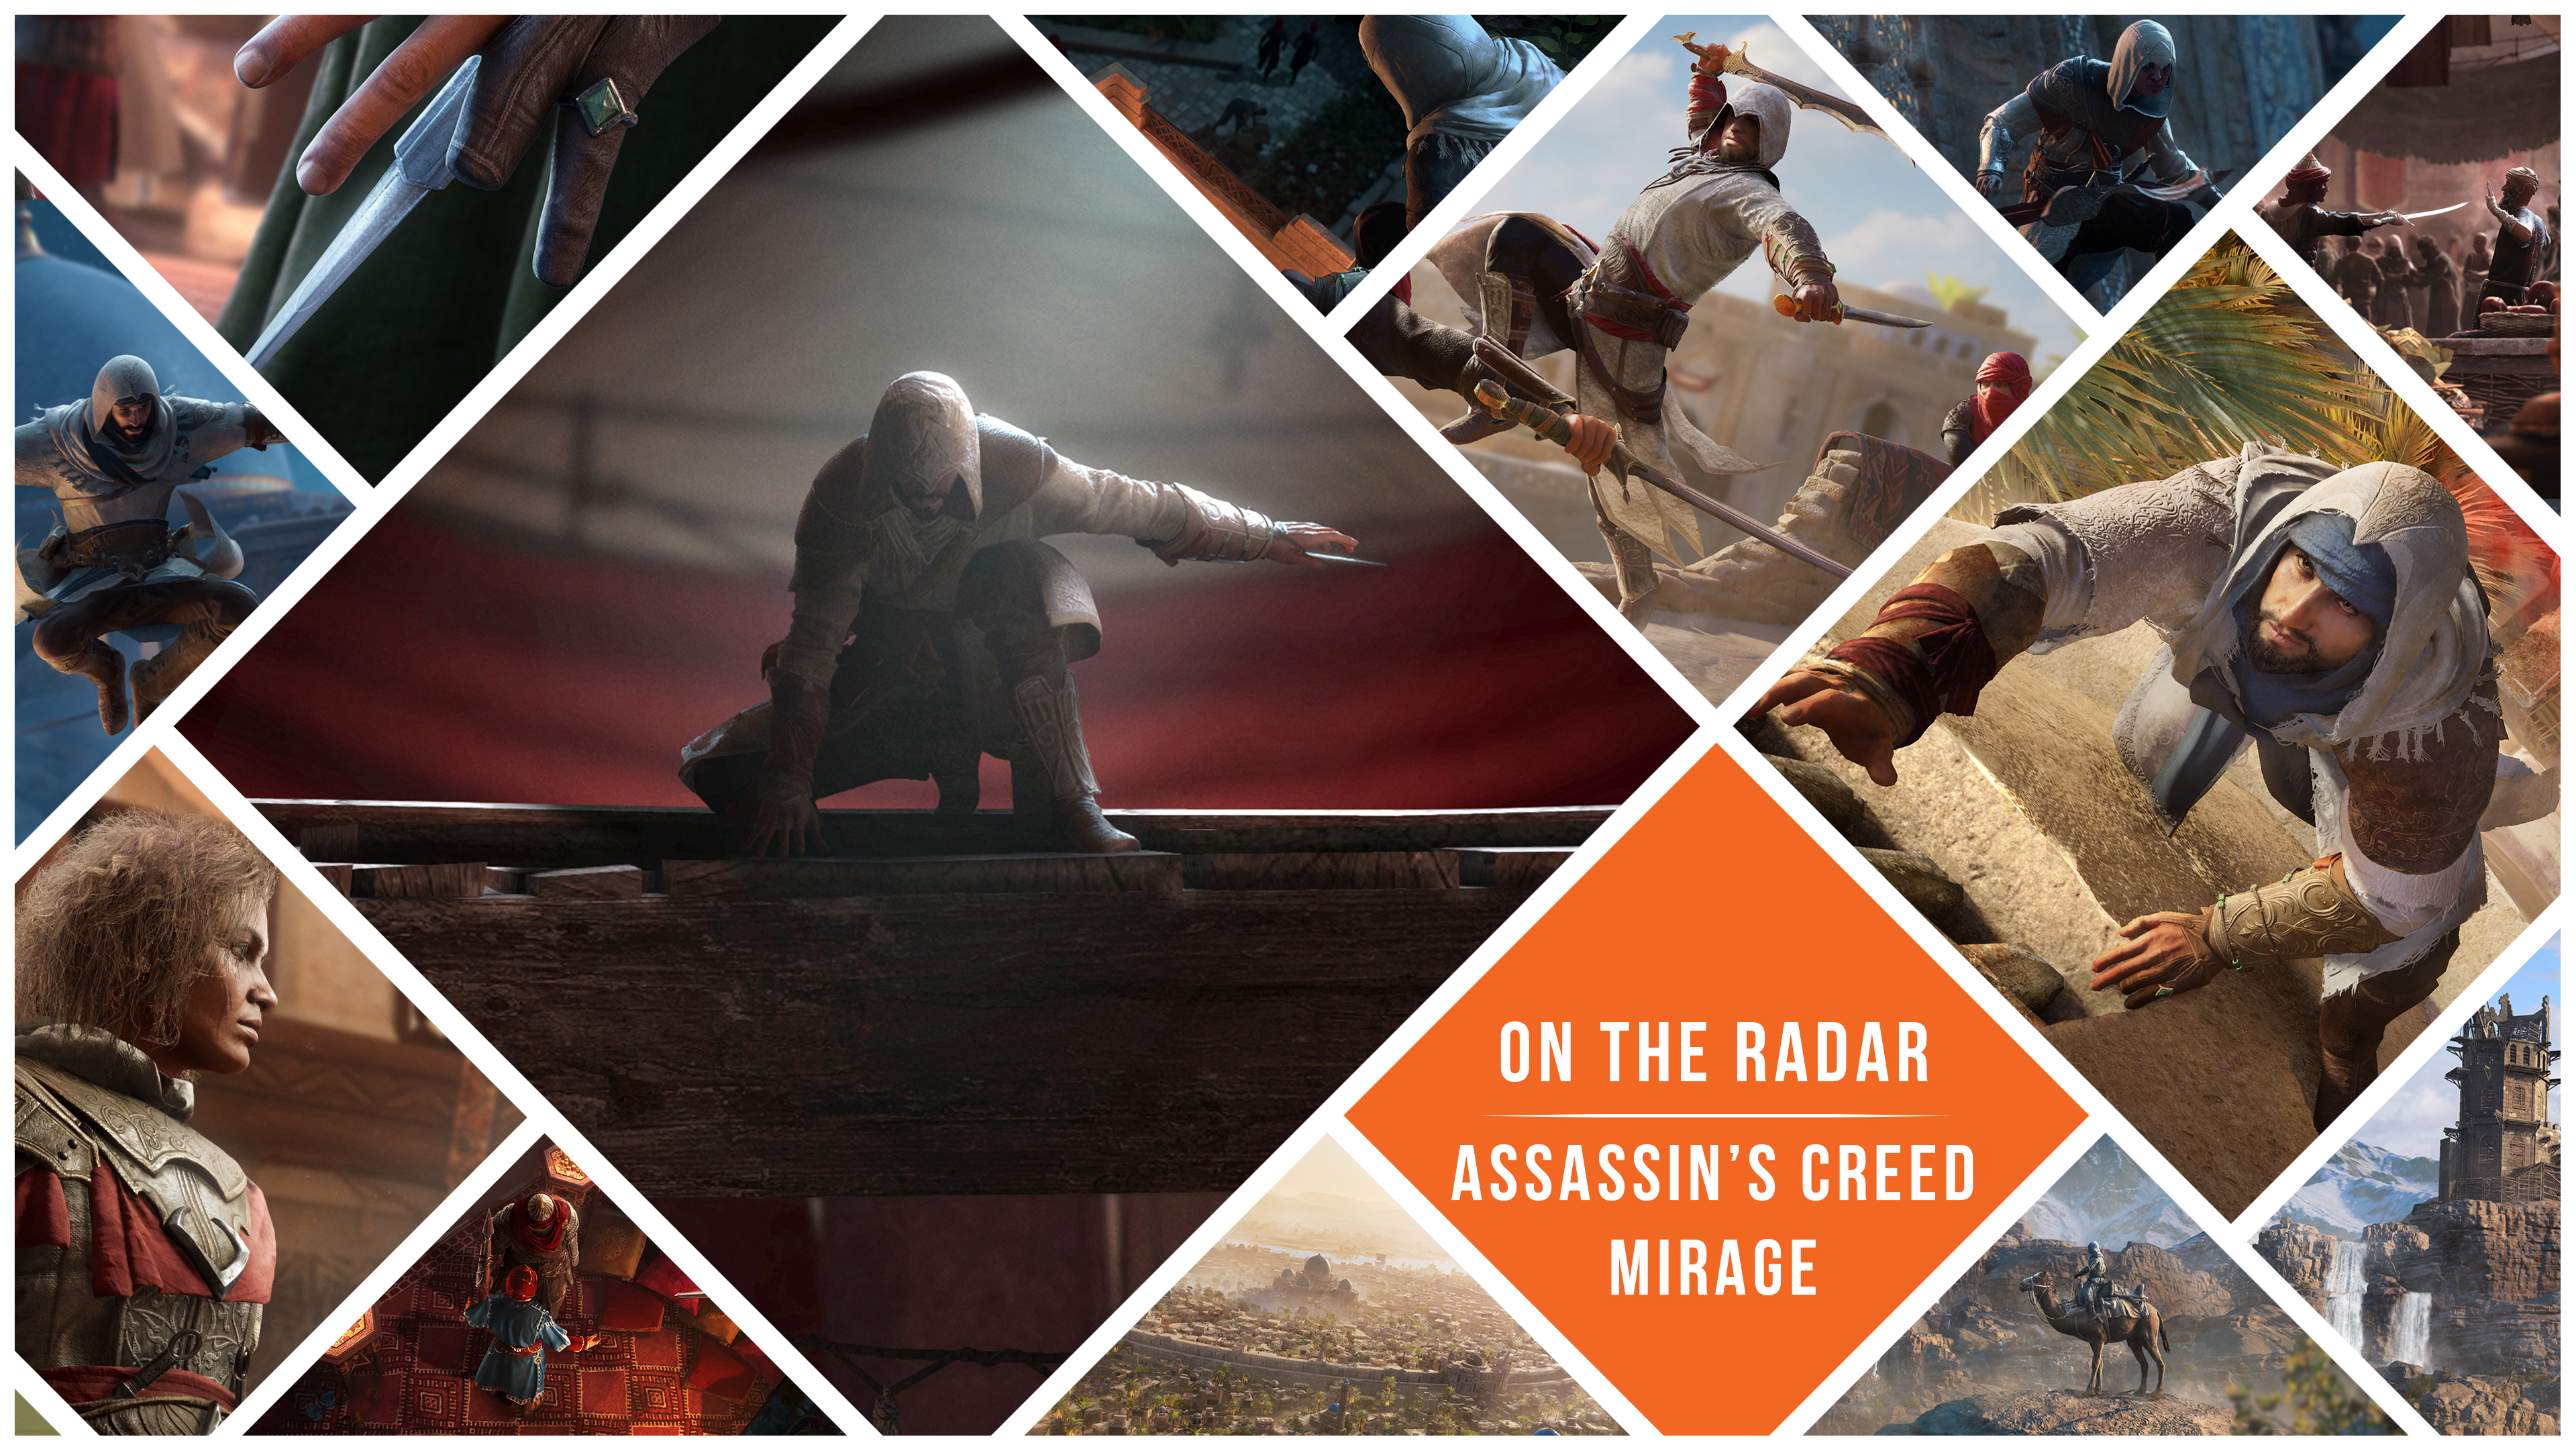 GamesRadar+'s 'On the Radar' Hub Header-Bild für Assassin's Creed Mirage, mit einer Reihe von Screenshots von Bagdad, Held Basim, seinem Mentor Roshan und anderen Charakteren.